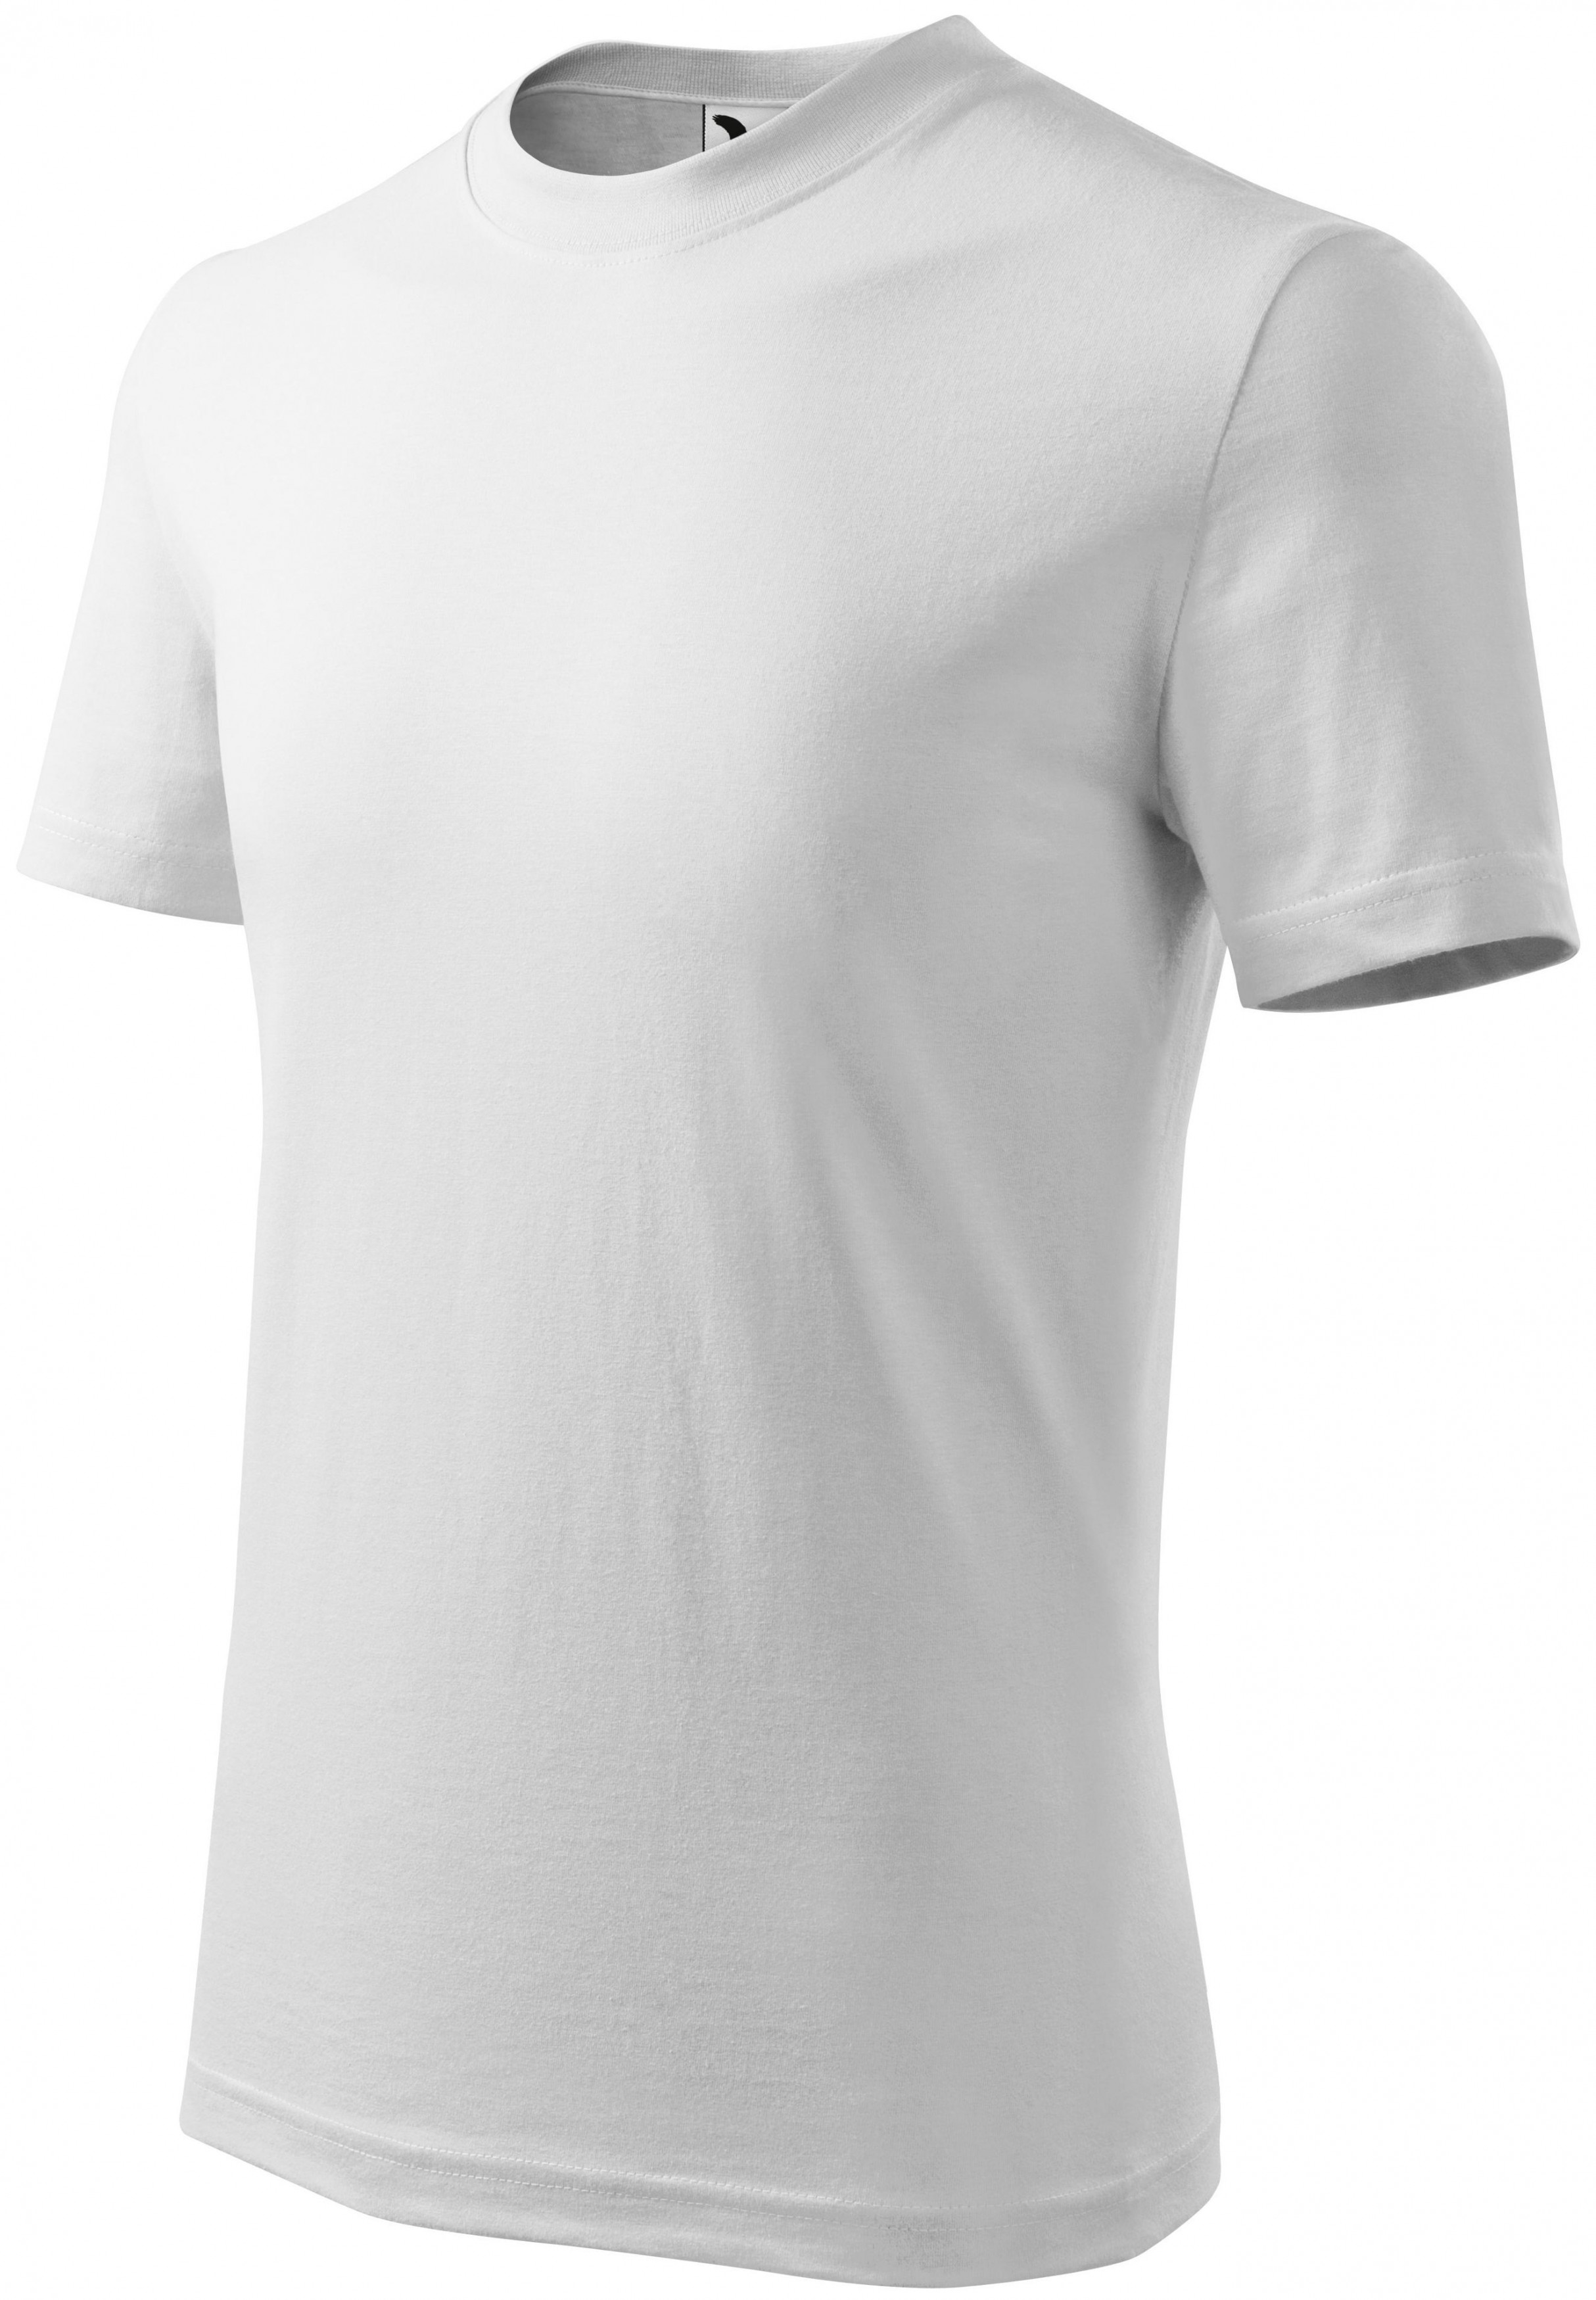 Detské tričko jednoduché, biela, 146cm / 10rokov